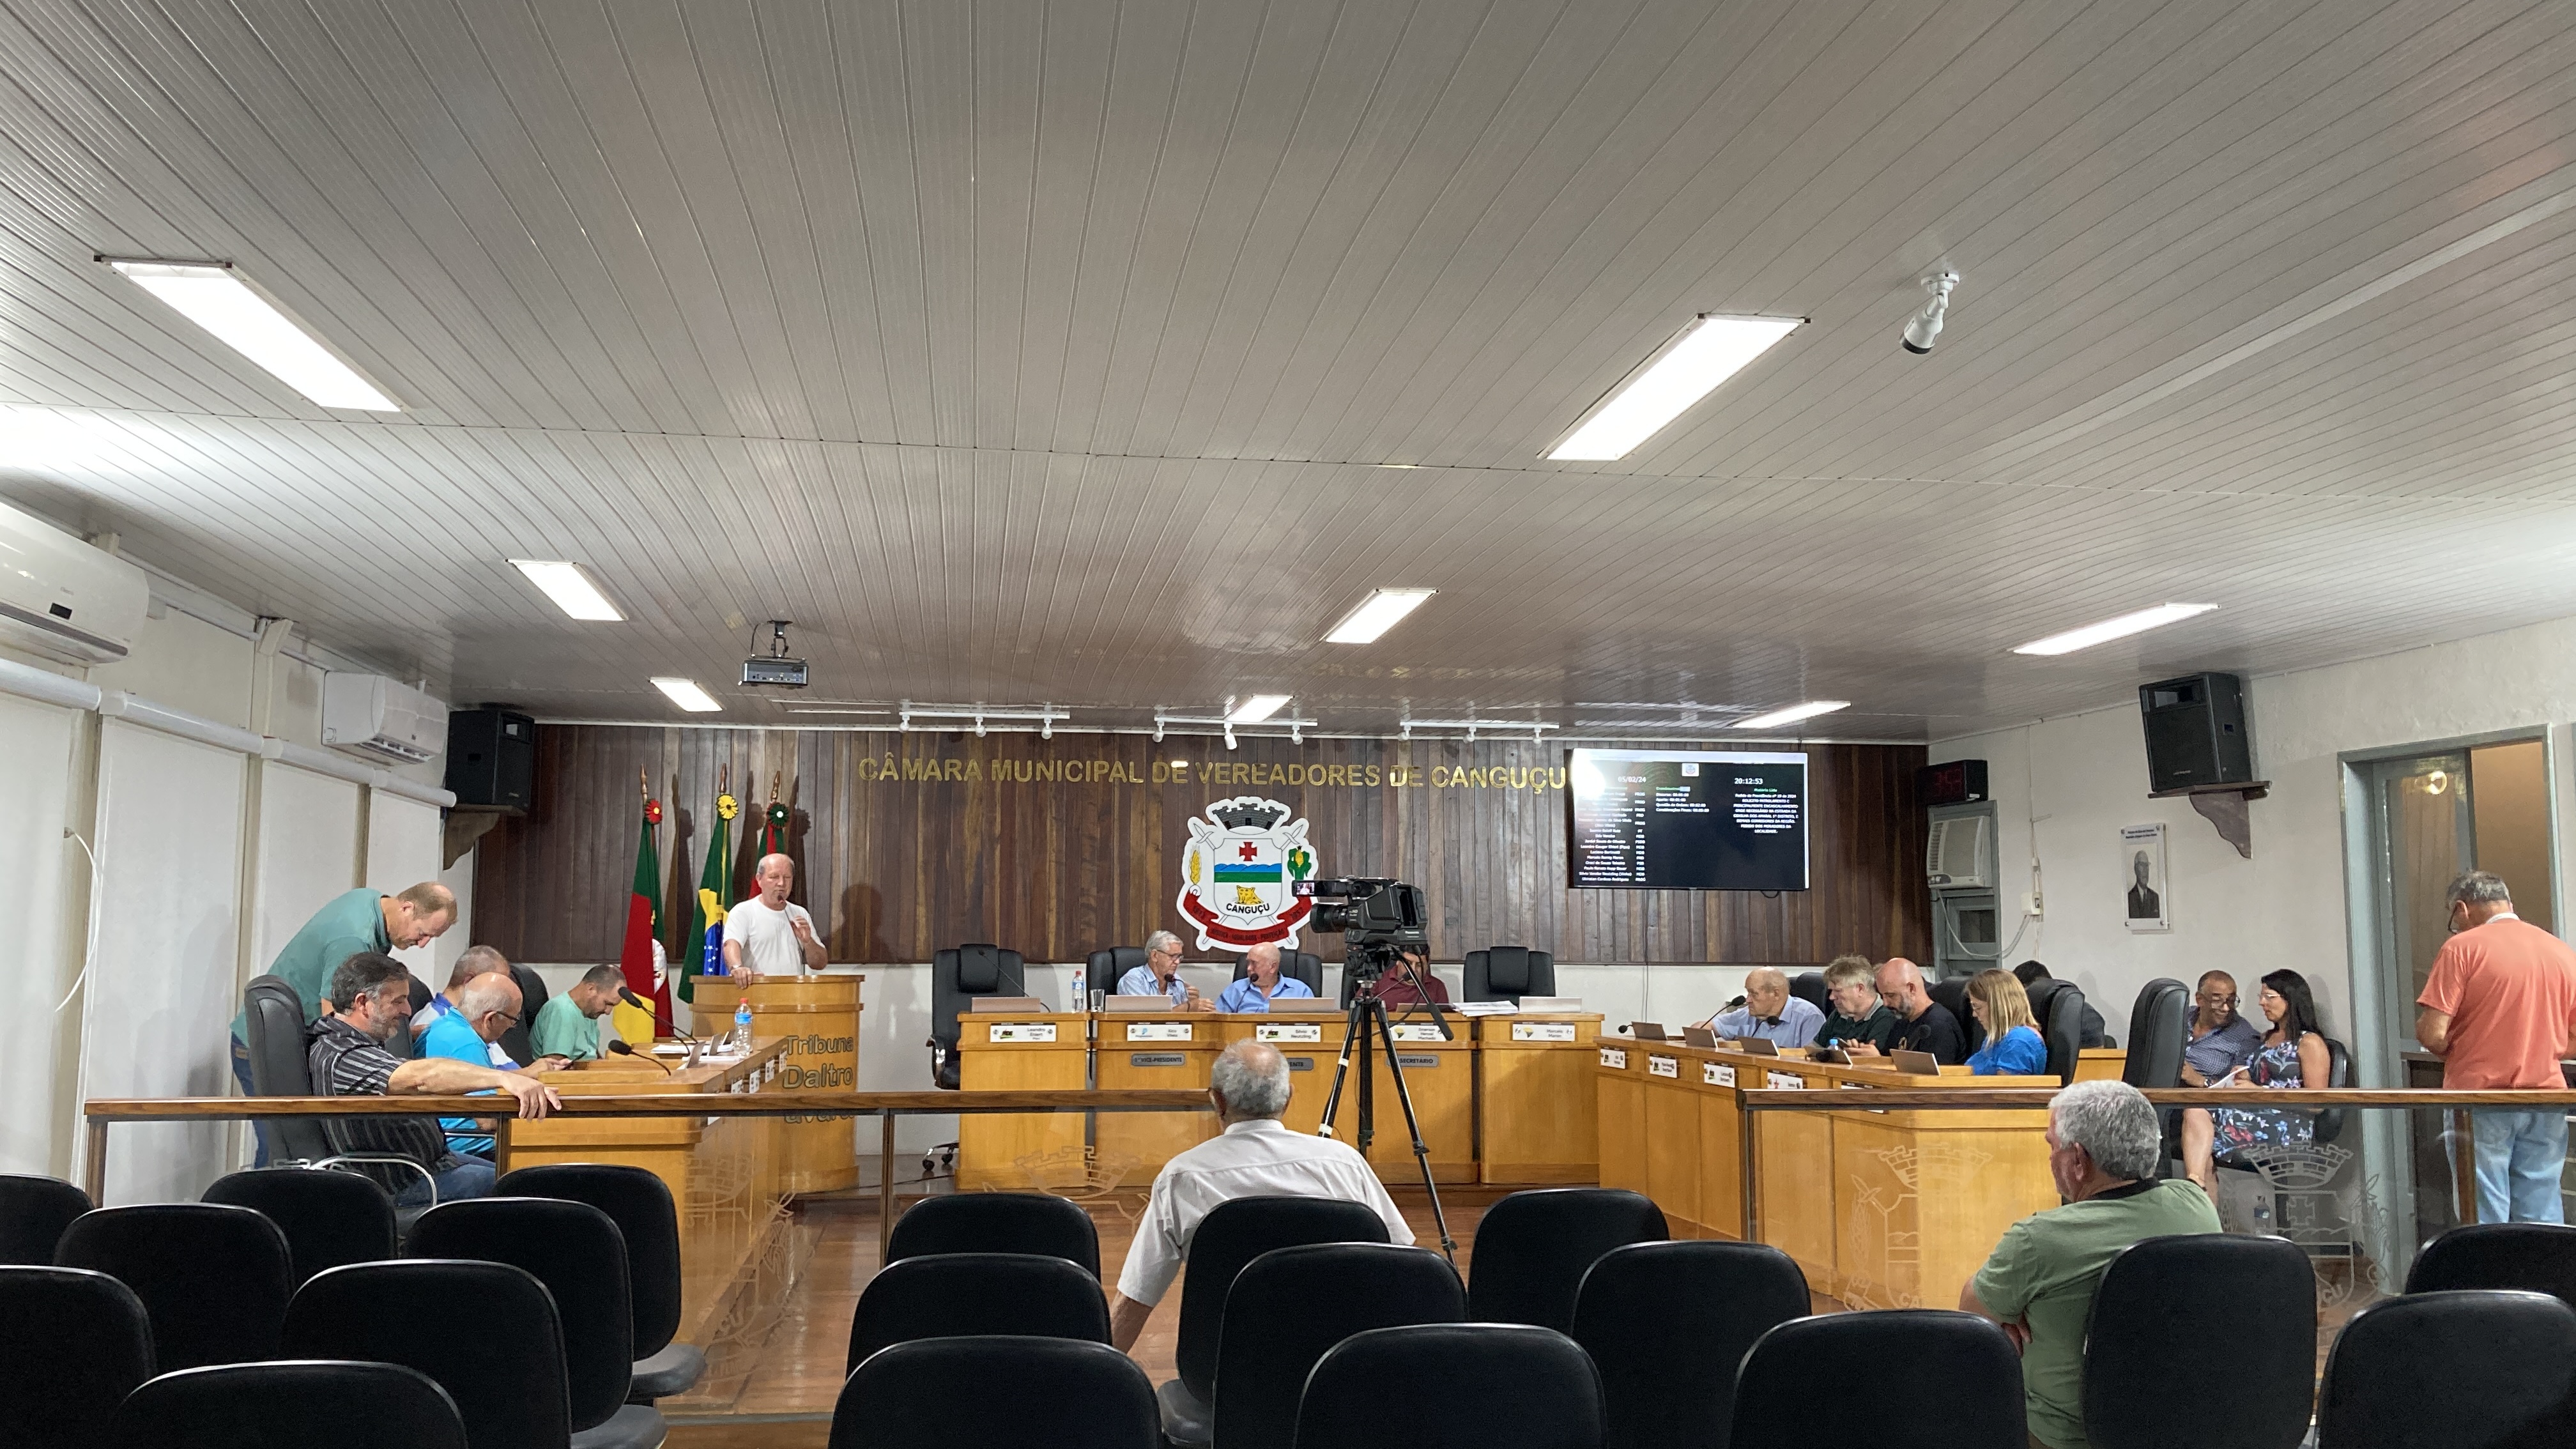 Comissões Permanentes são compostas na Câmara - Câmara de vereadores de Canguçu